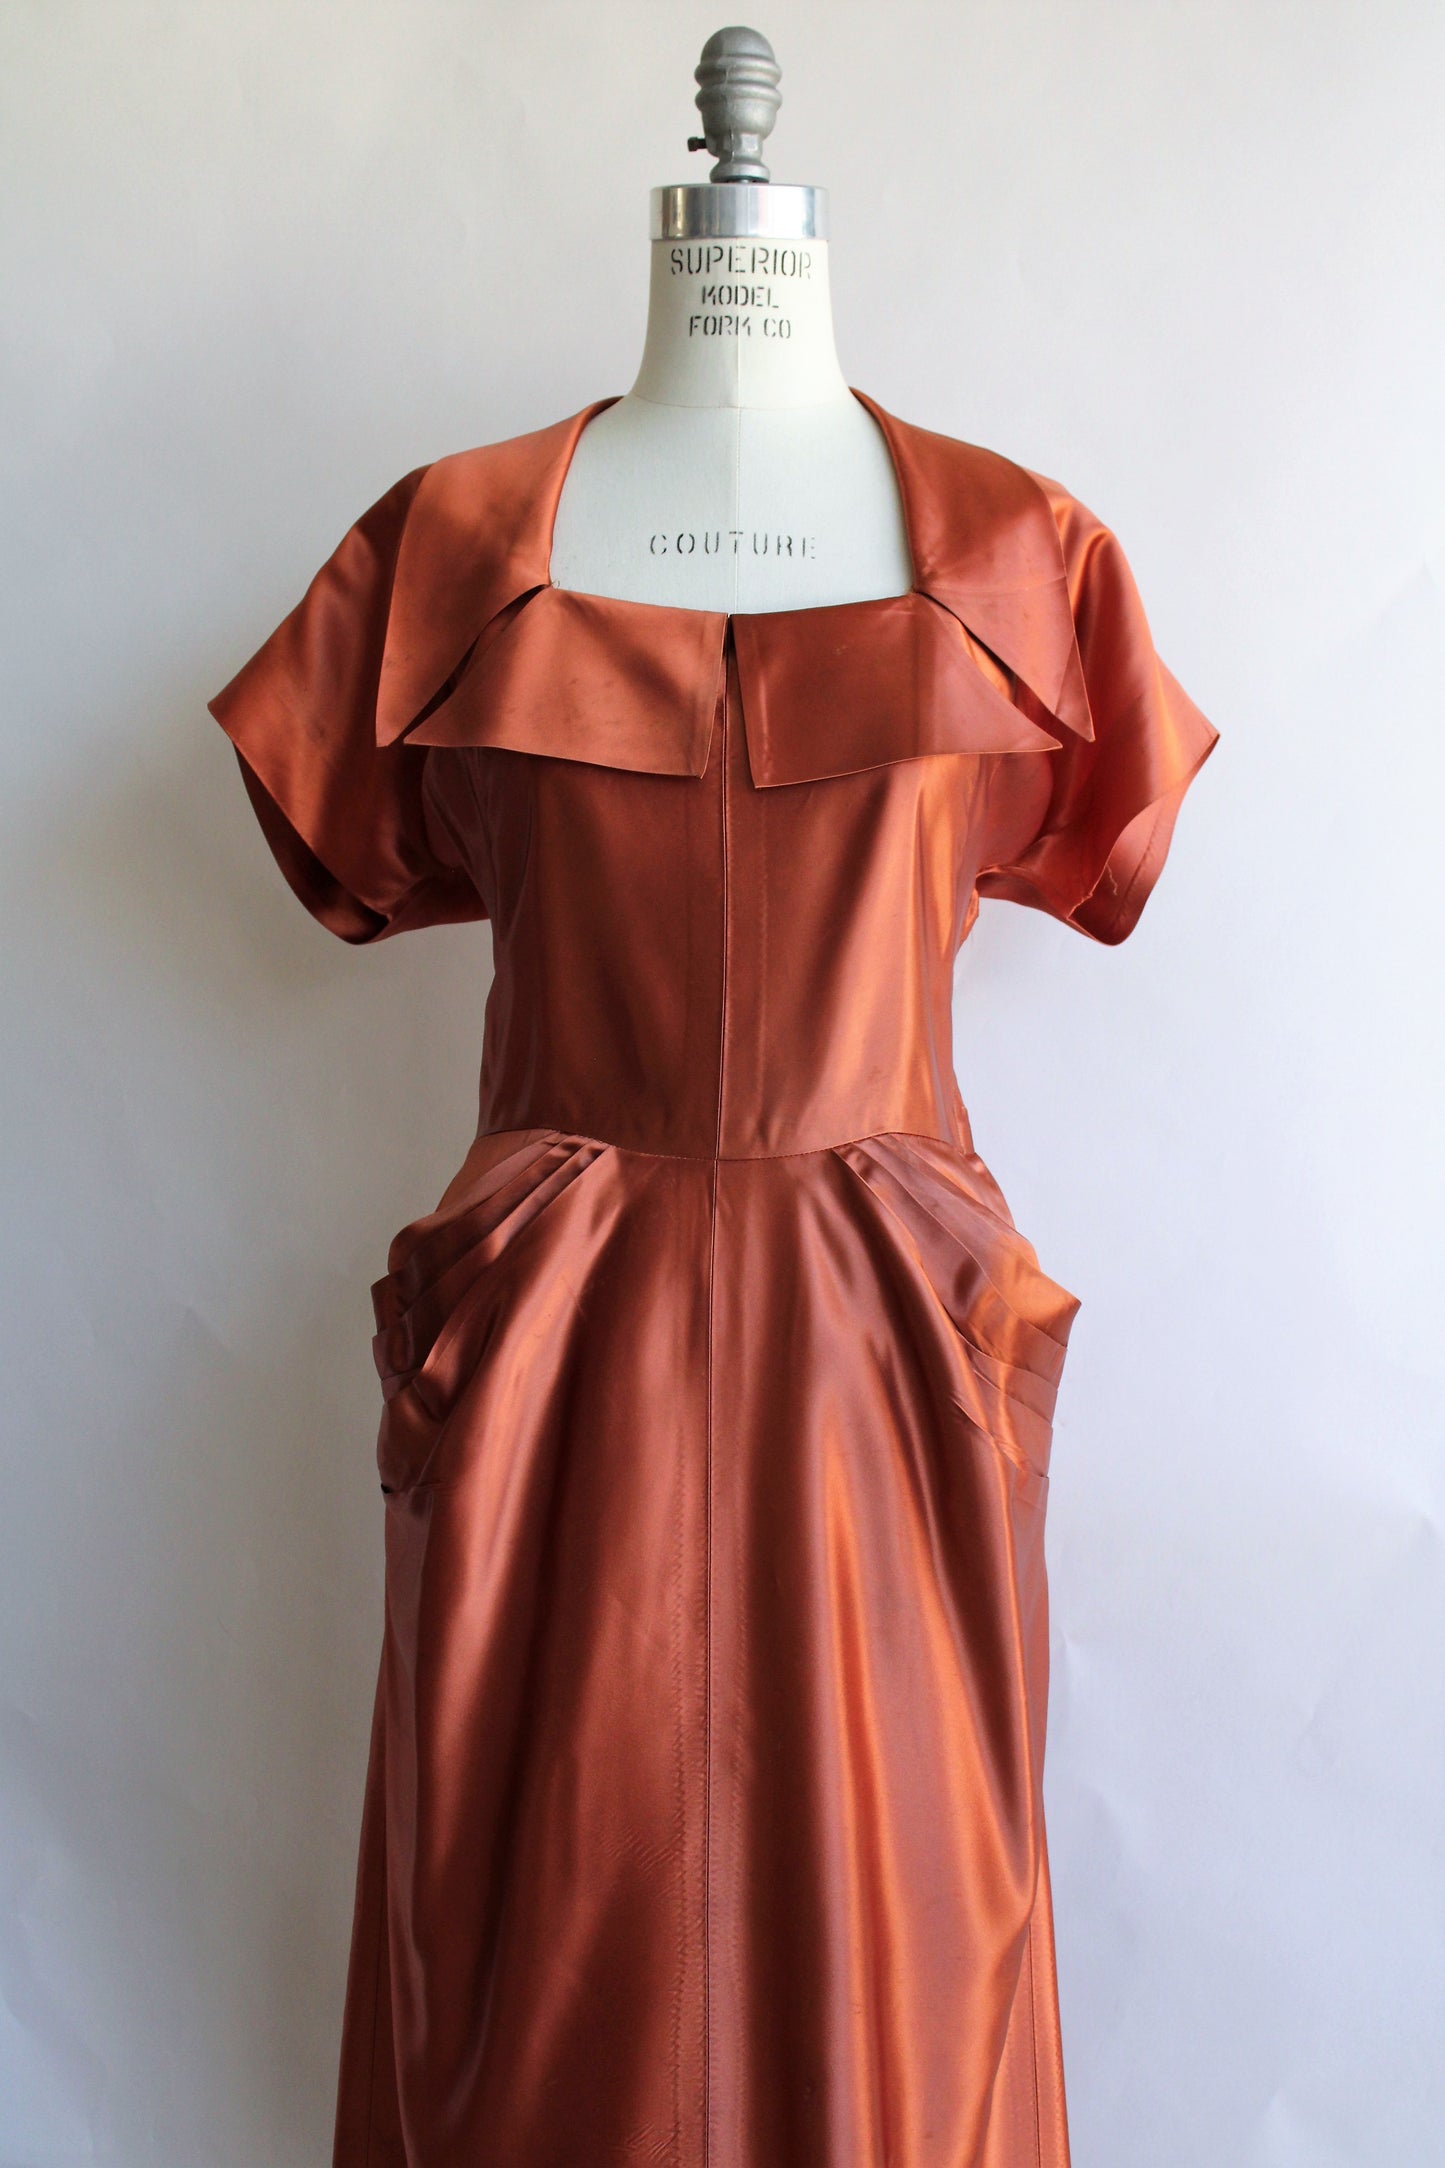 Vintage 1940s Rust Orange Satin Dress